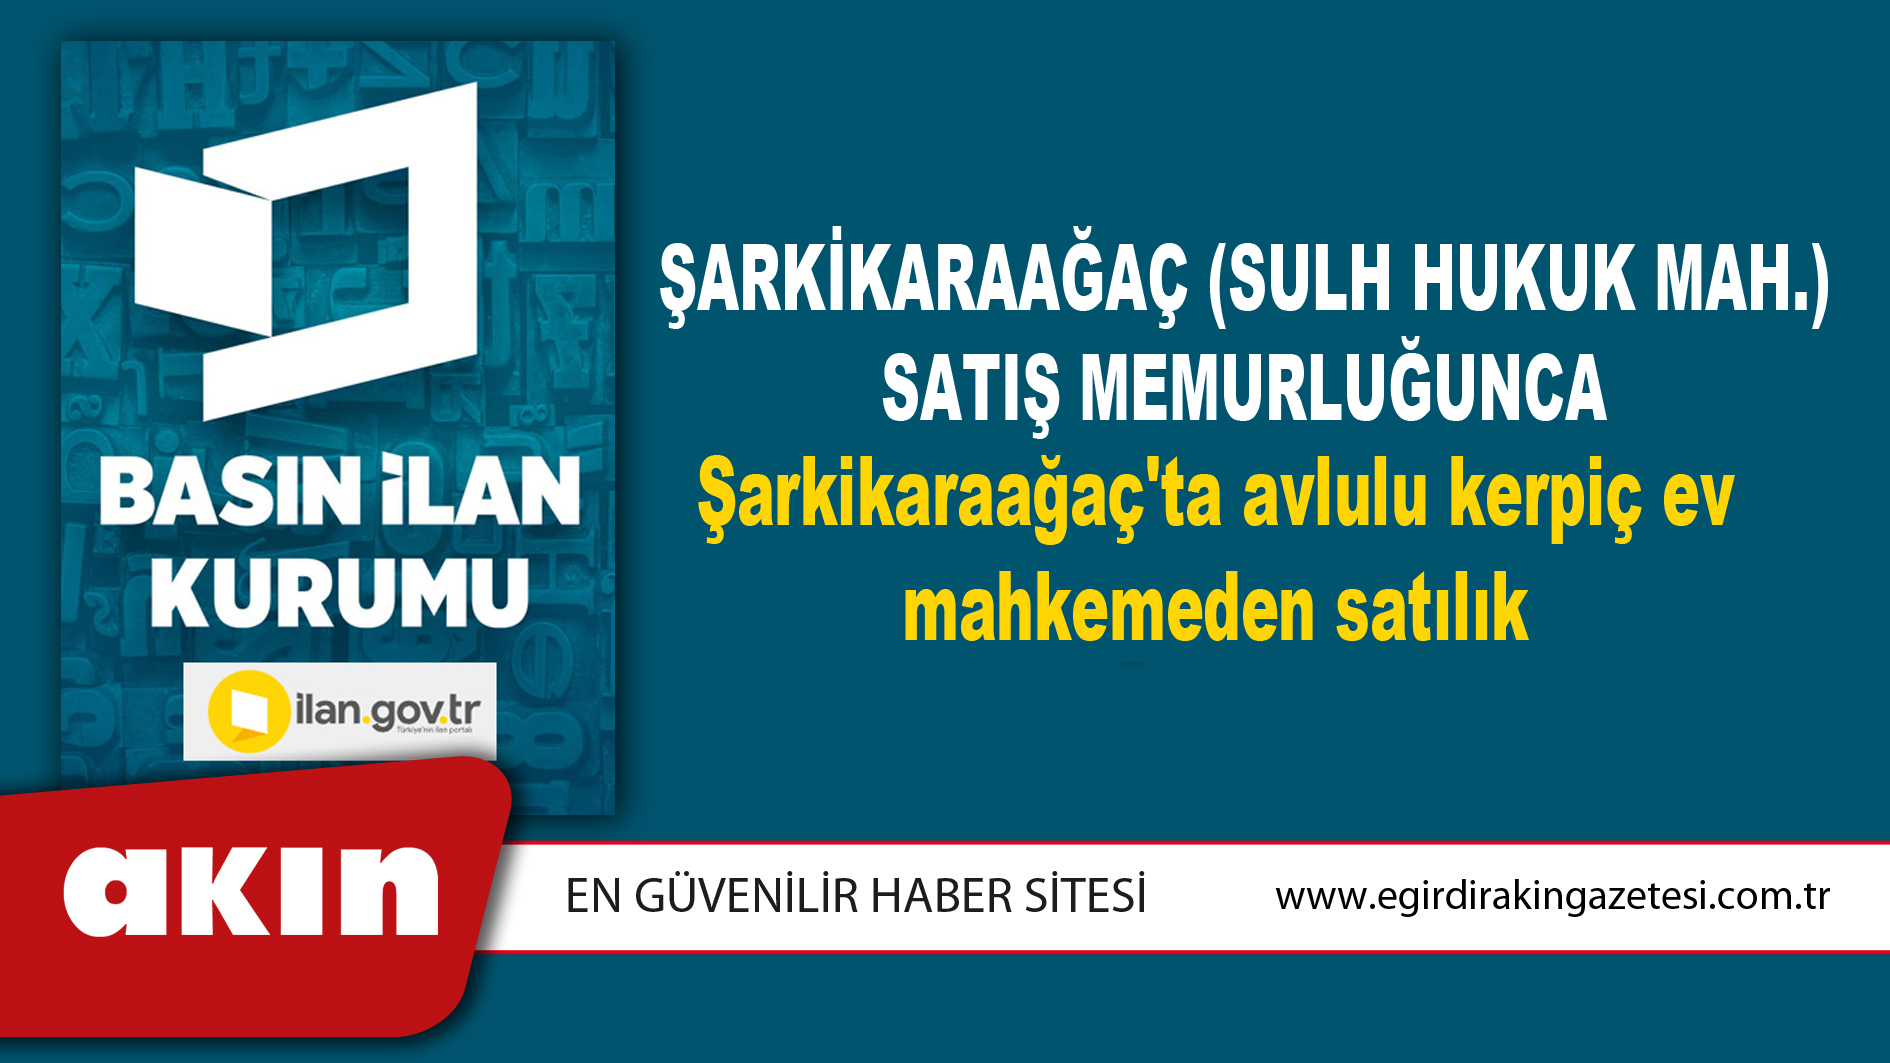 Şarkikaraağaç (Sulh Hukuk Mah.) Satış Memurluğunca Şarkikaraağaç'ta avlulu kerpiç ev mahkemeden satılık